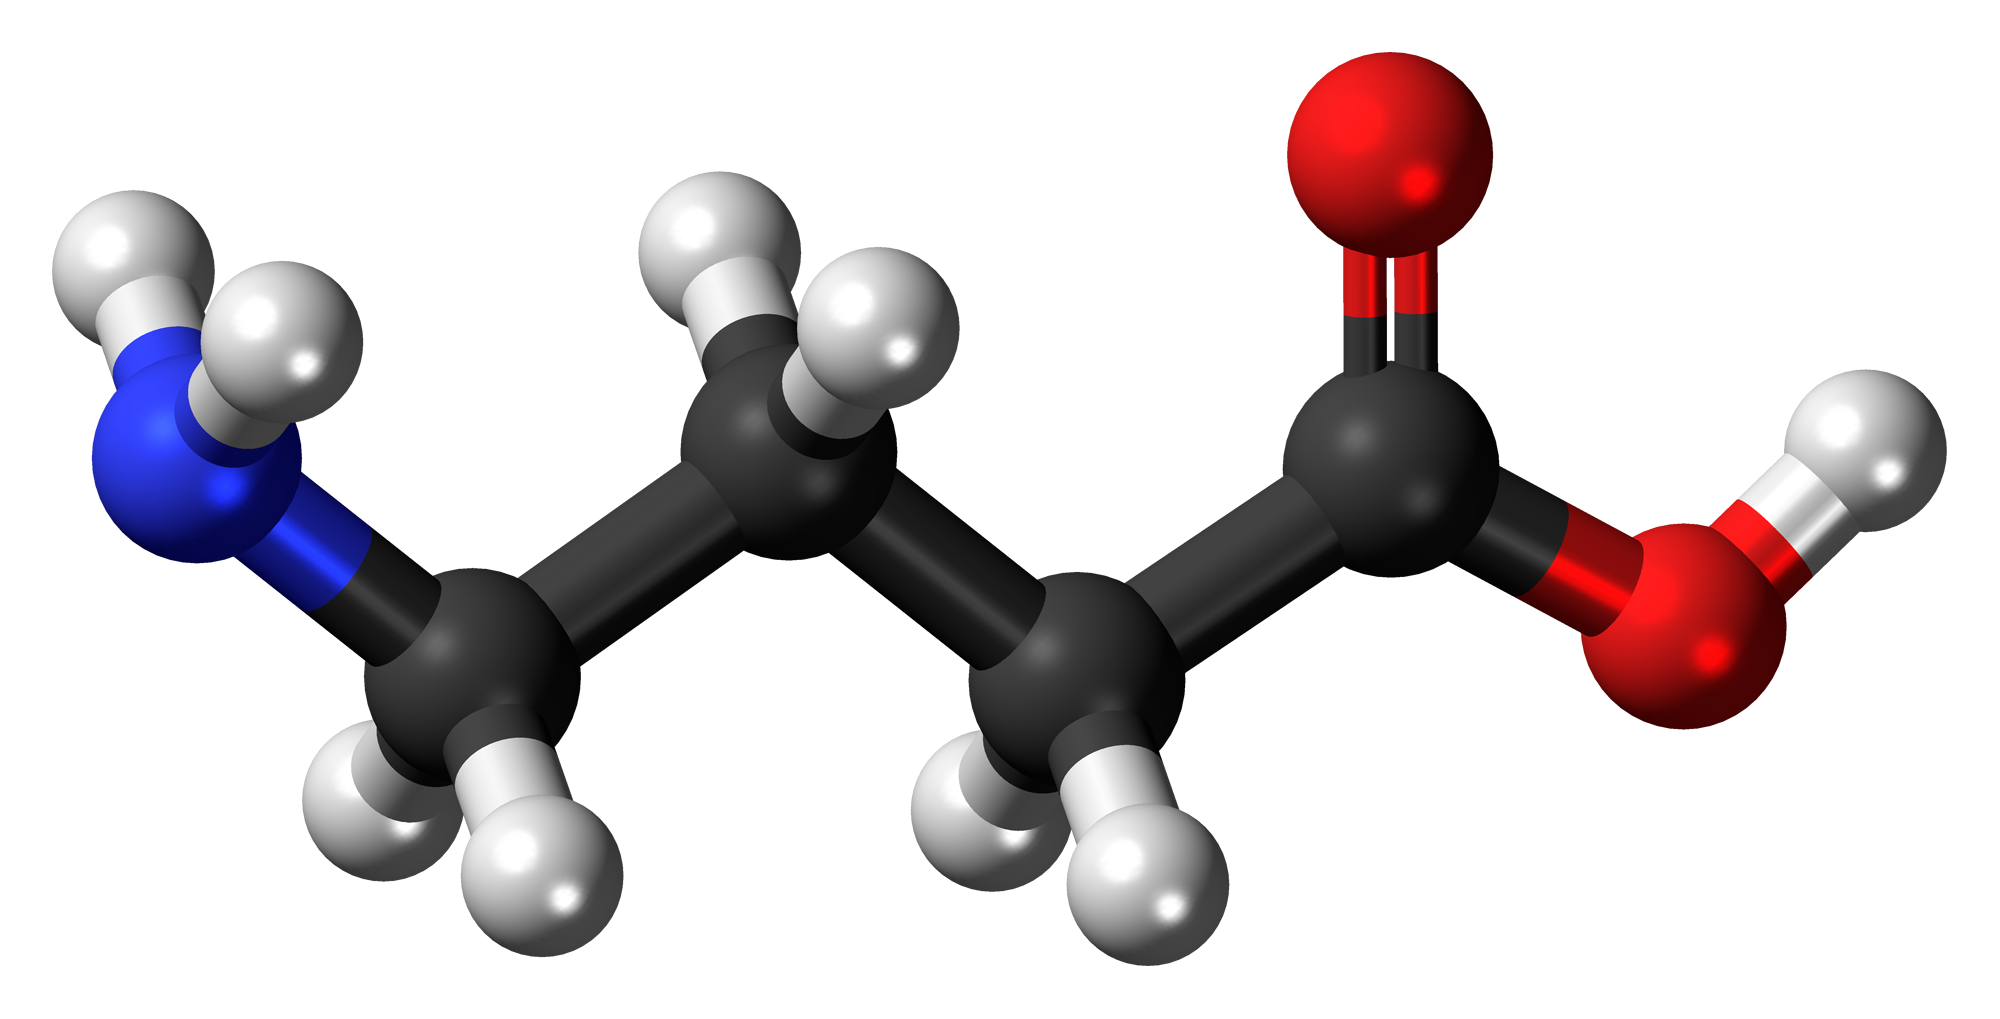 Acidul γ-aminobutiric sau acidul gama-aminobutiric, cunoscut în general sub acronimul GABA, este cea mai comună formă de acid γ-aminobutiric.